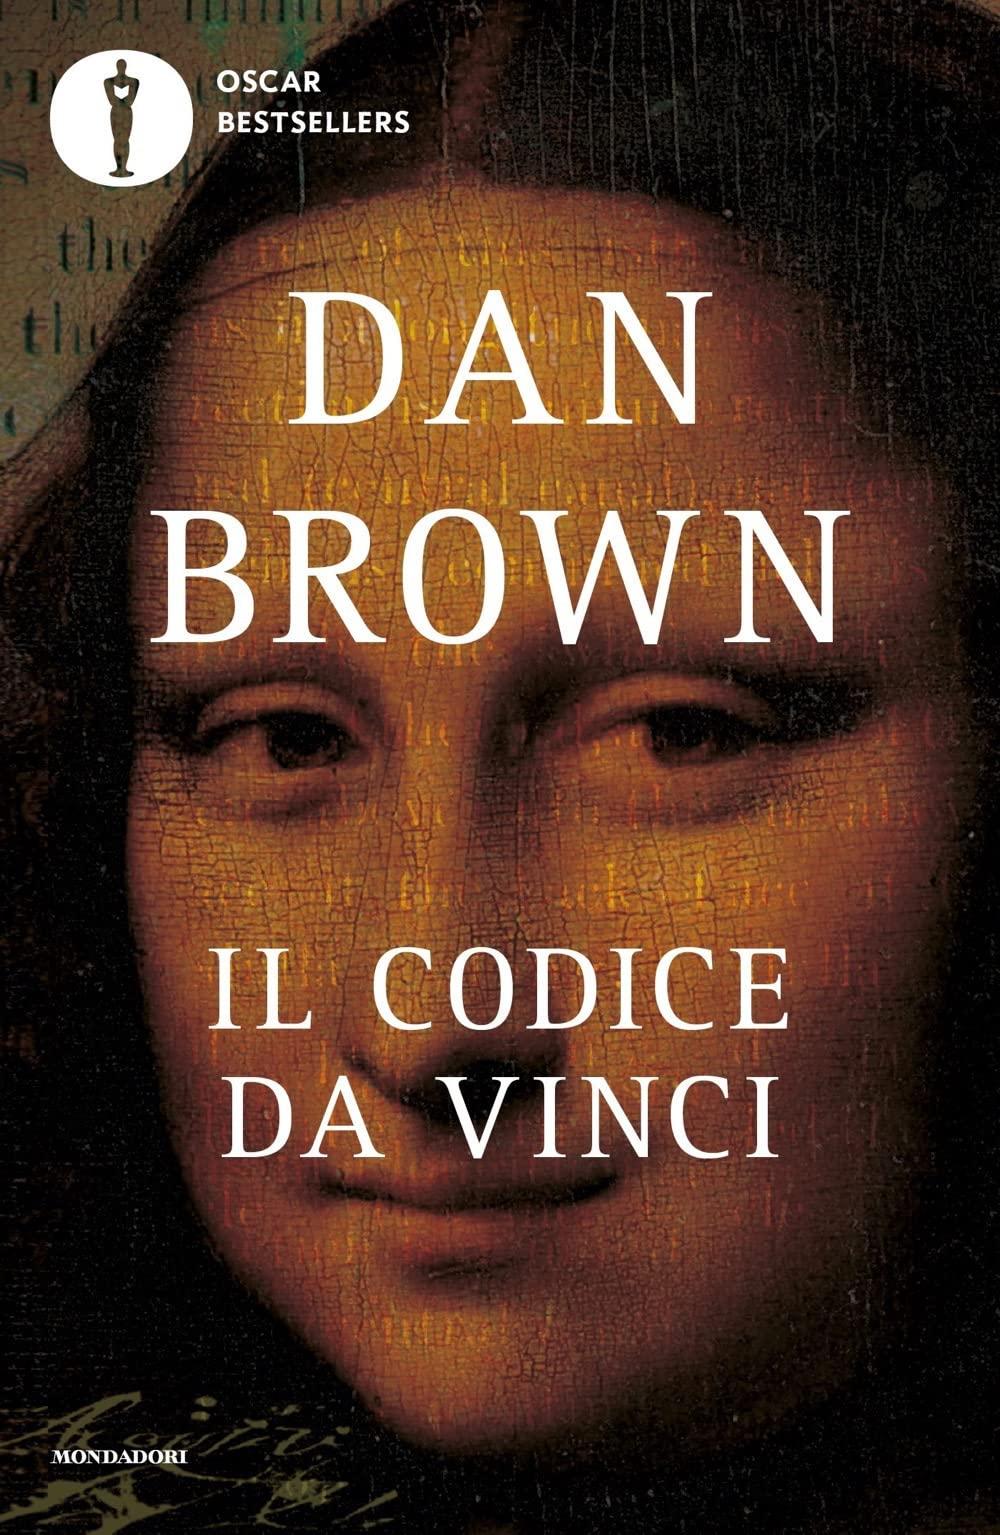 Libro "Il Codice da Vinci" di Dan Brown